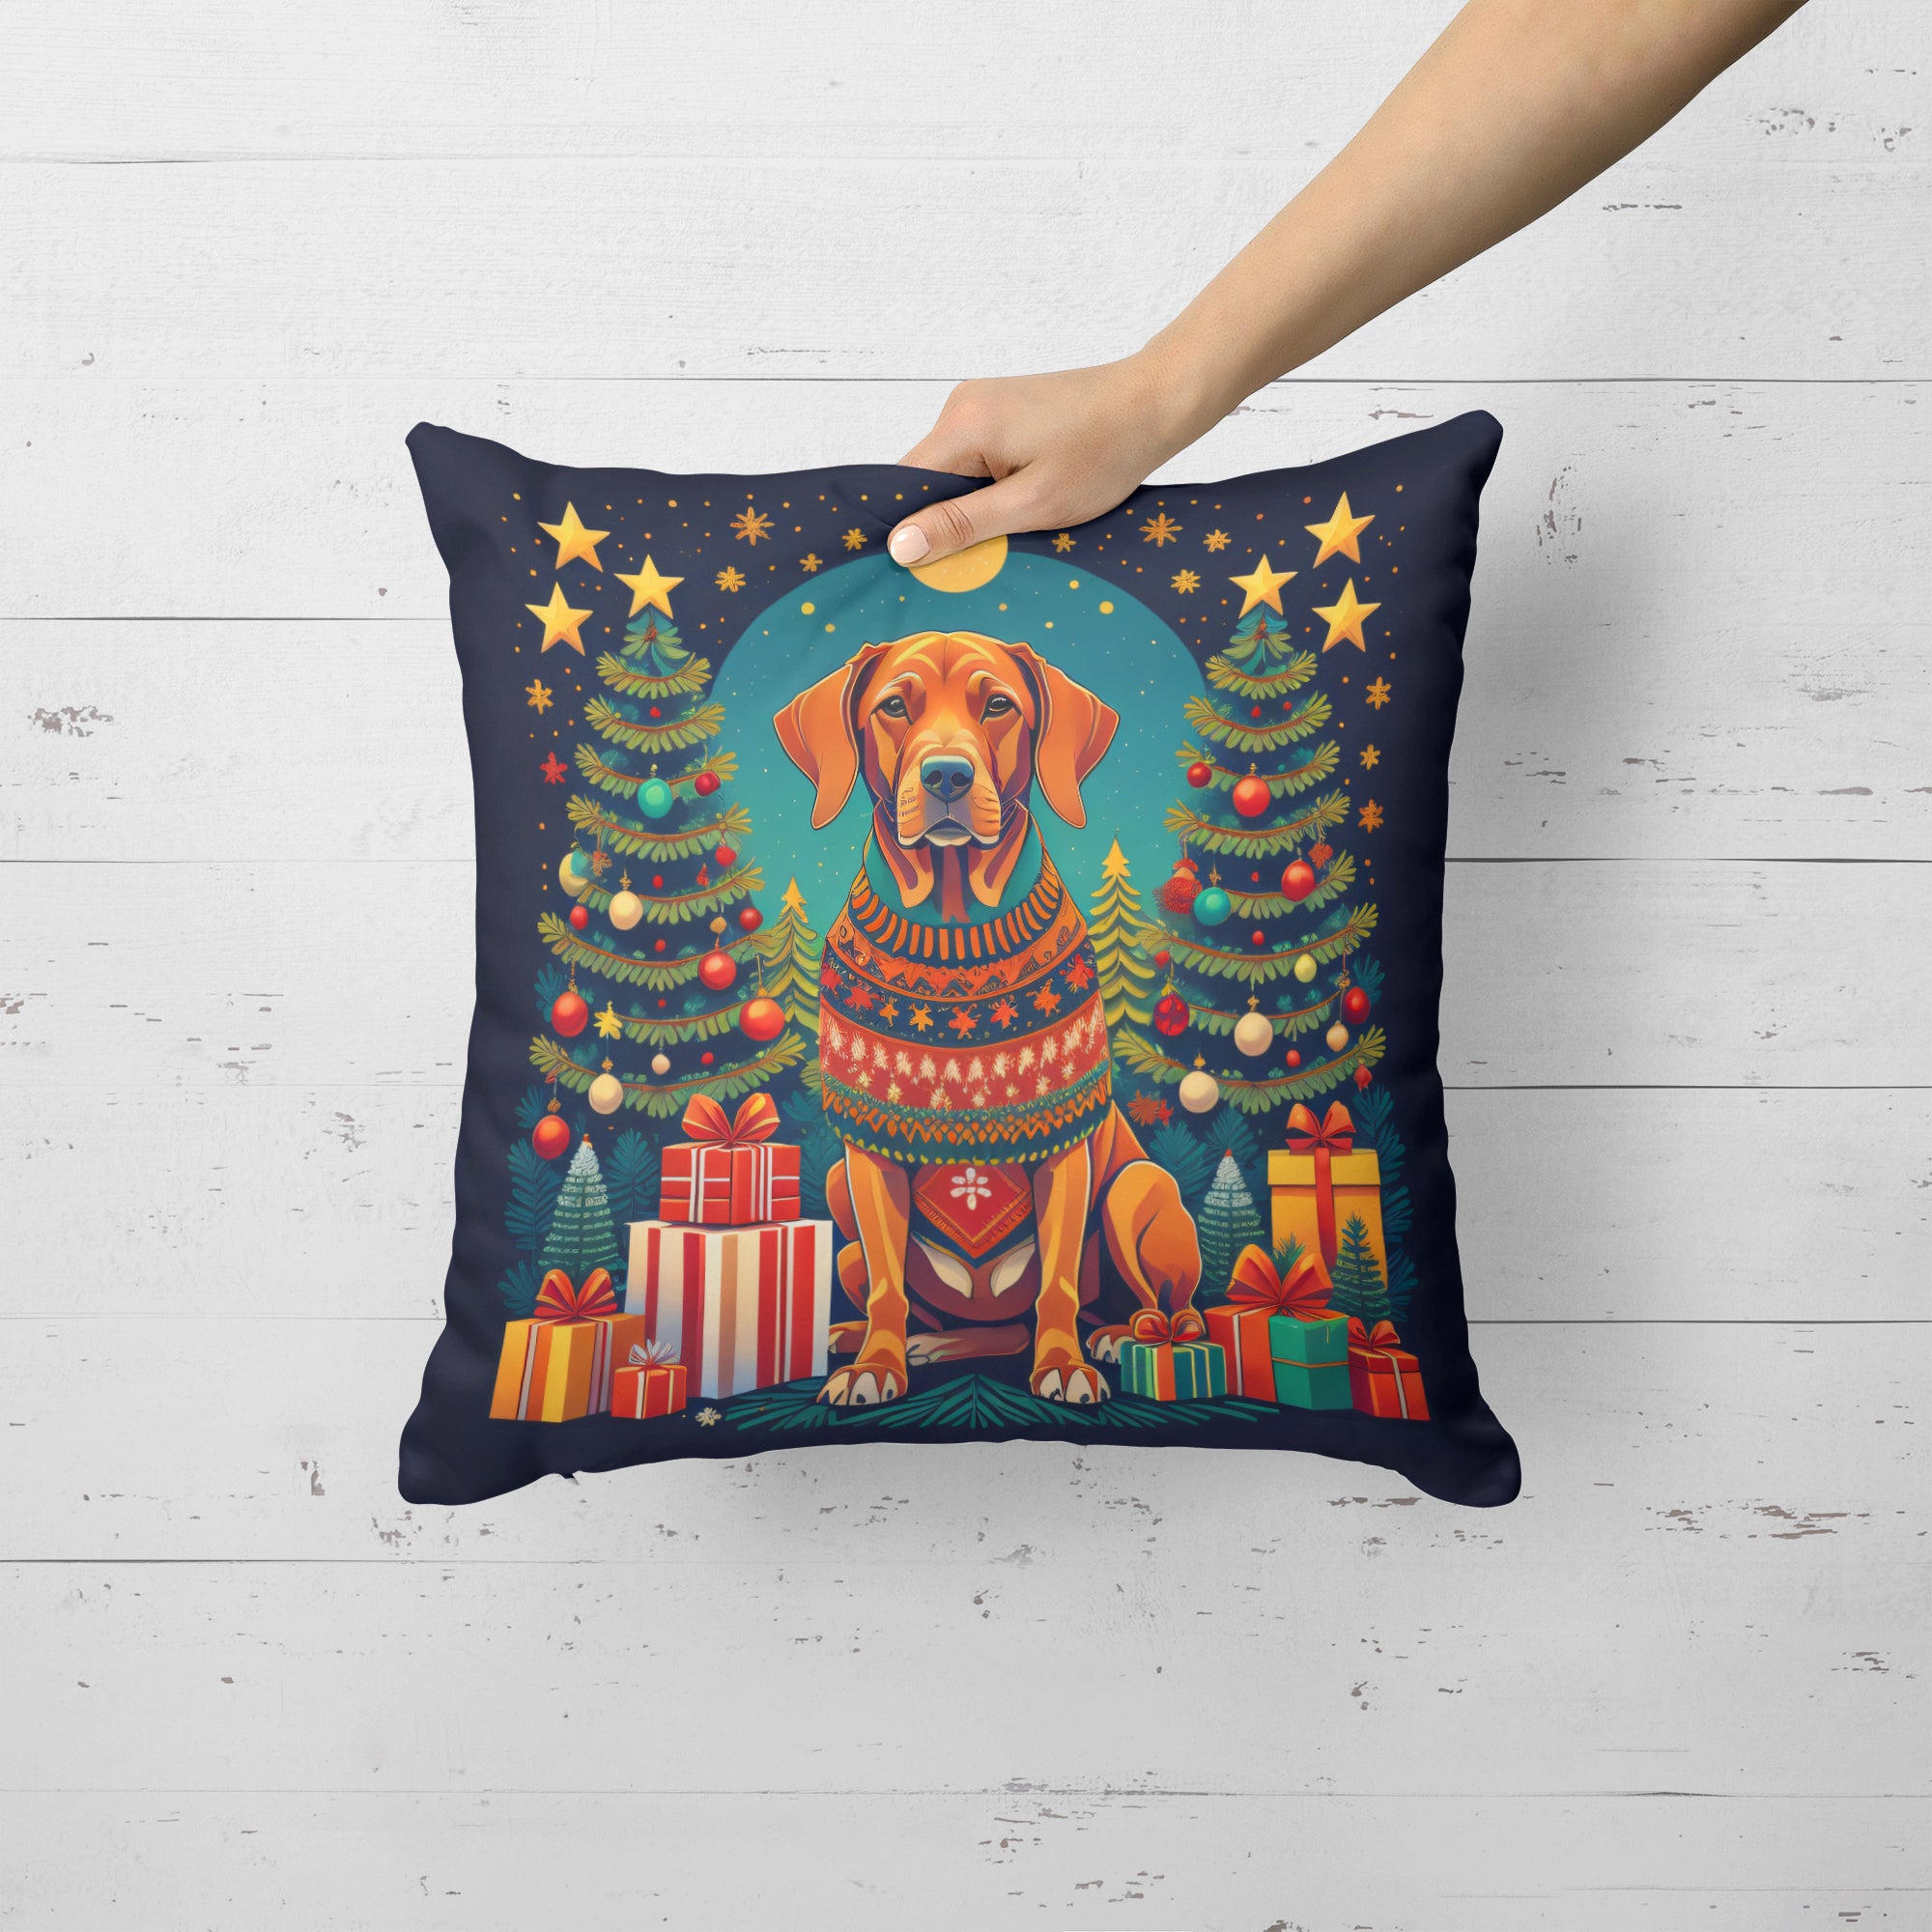 Buy this Vizsla Christmas Fabric Decorative Pillow